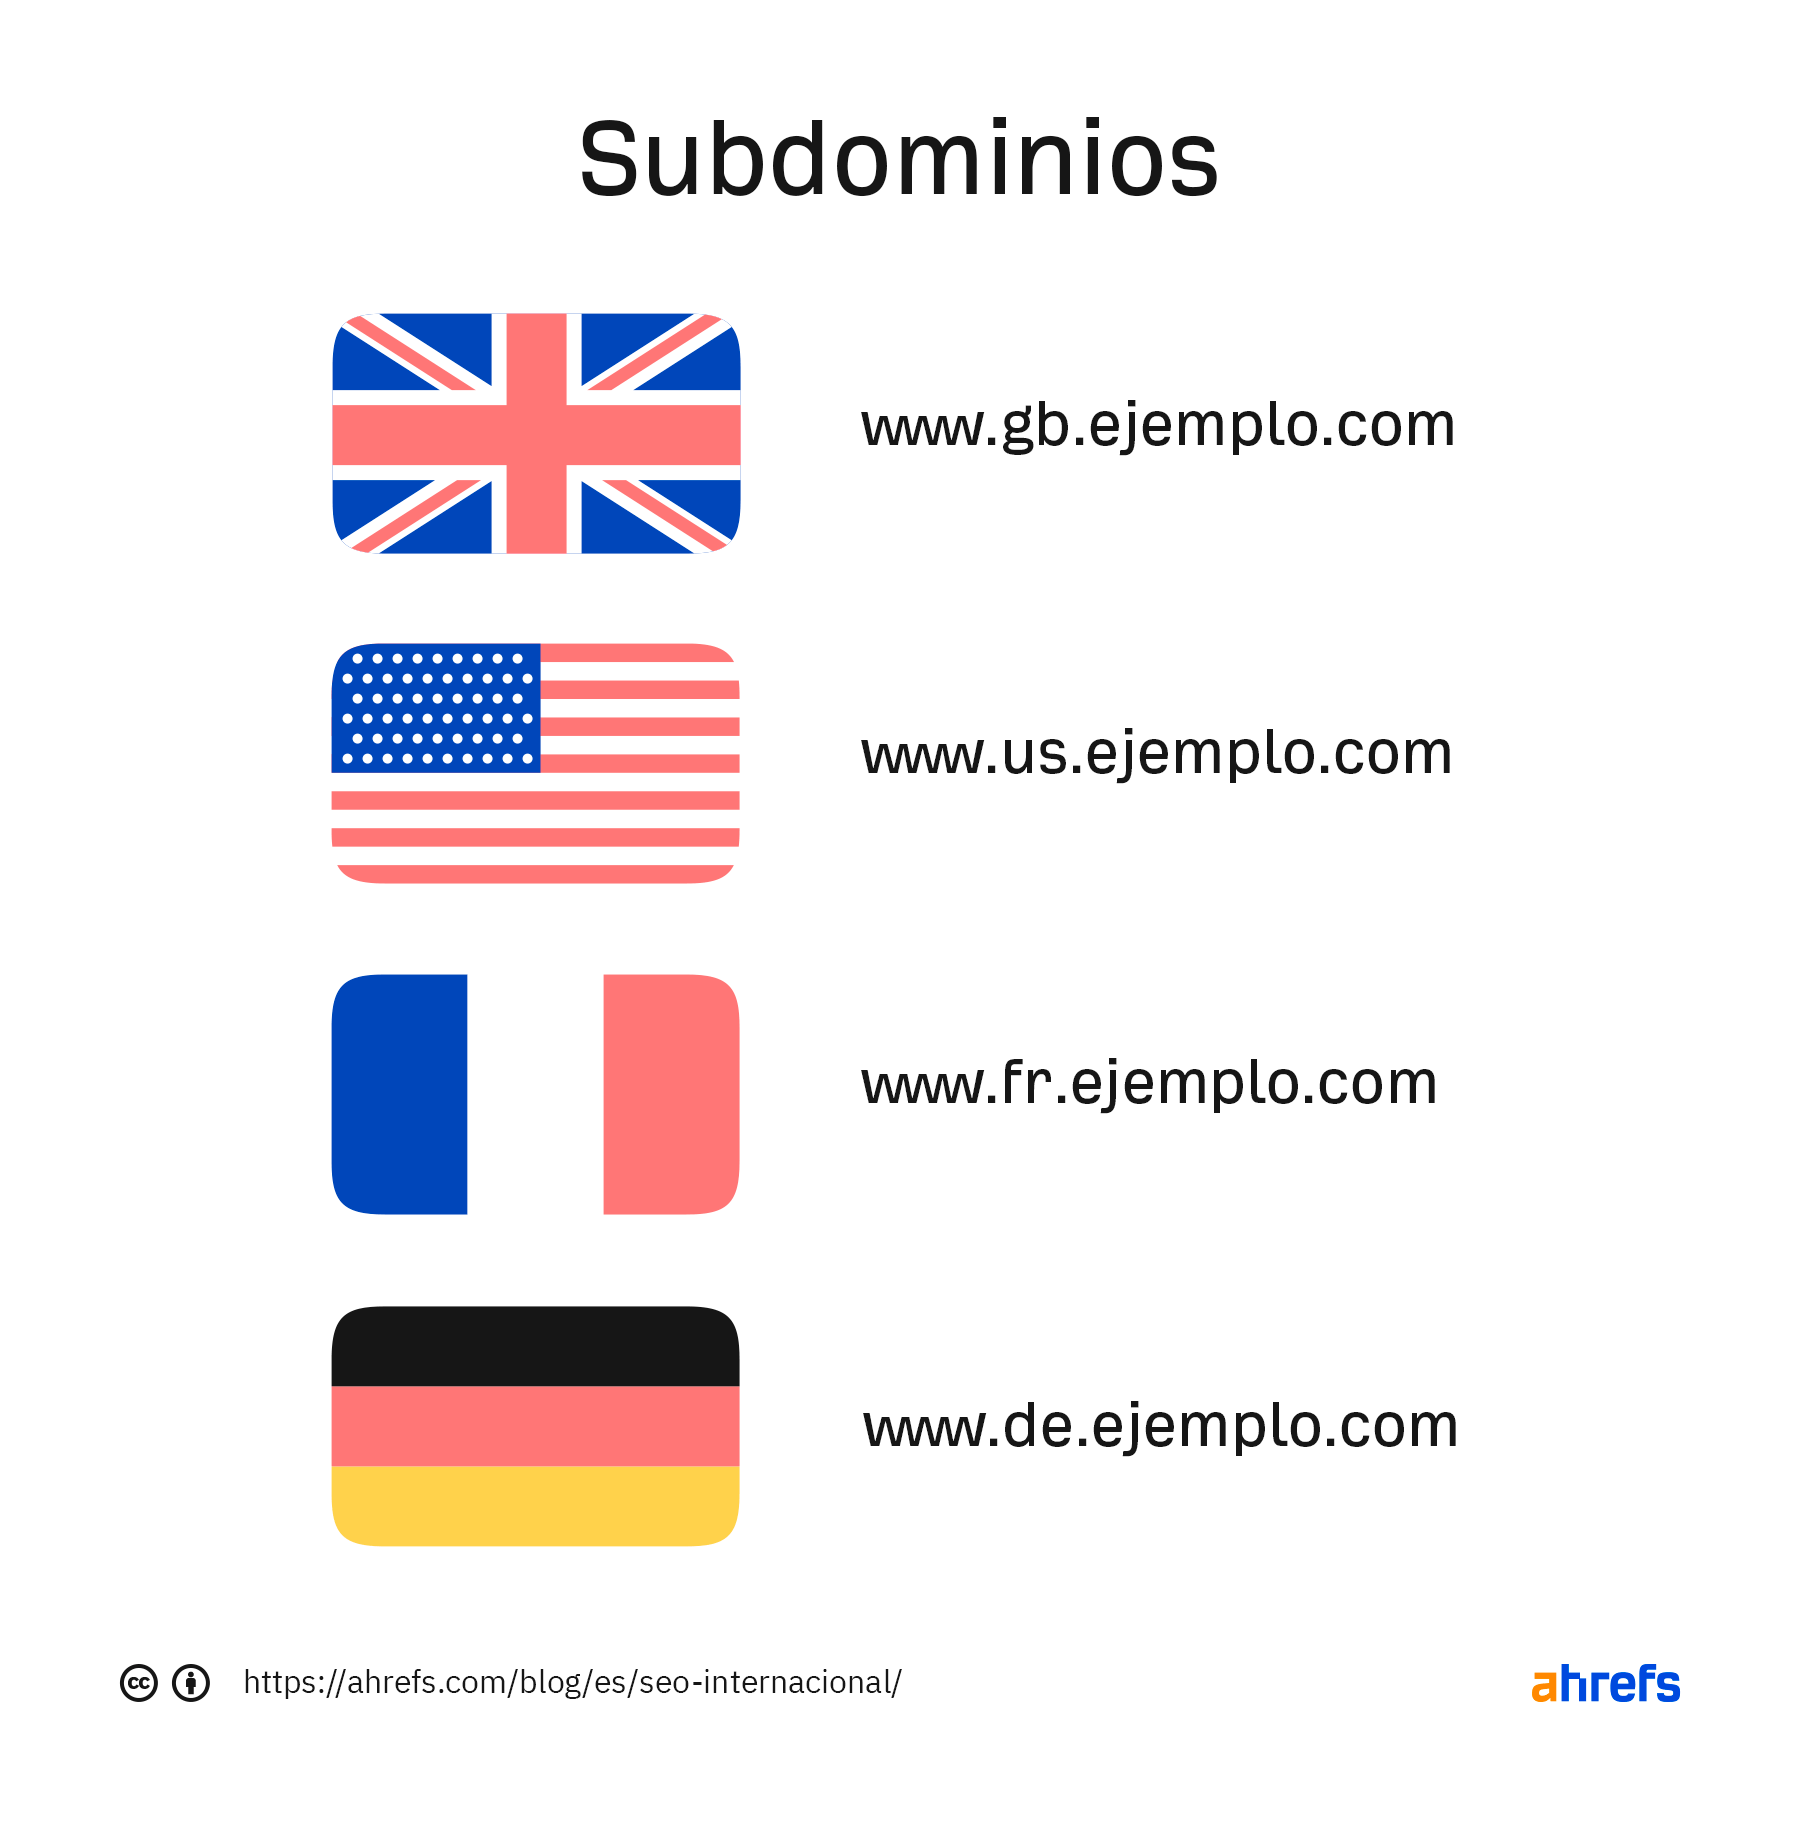 Ejemplo de subdominios e idiomas